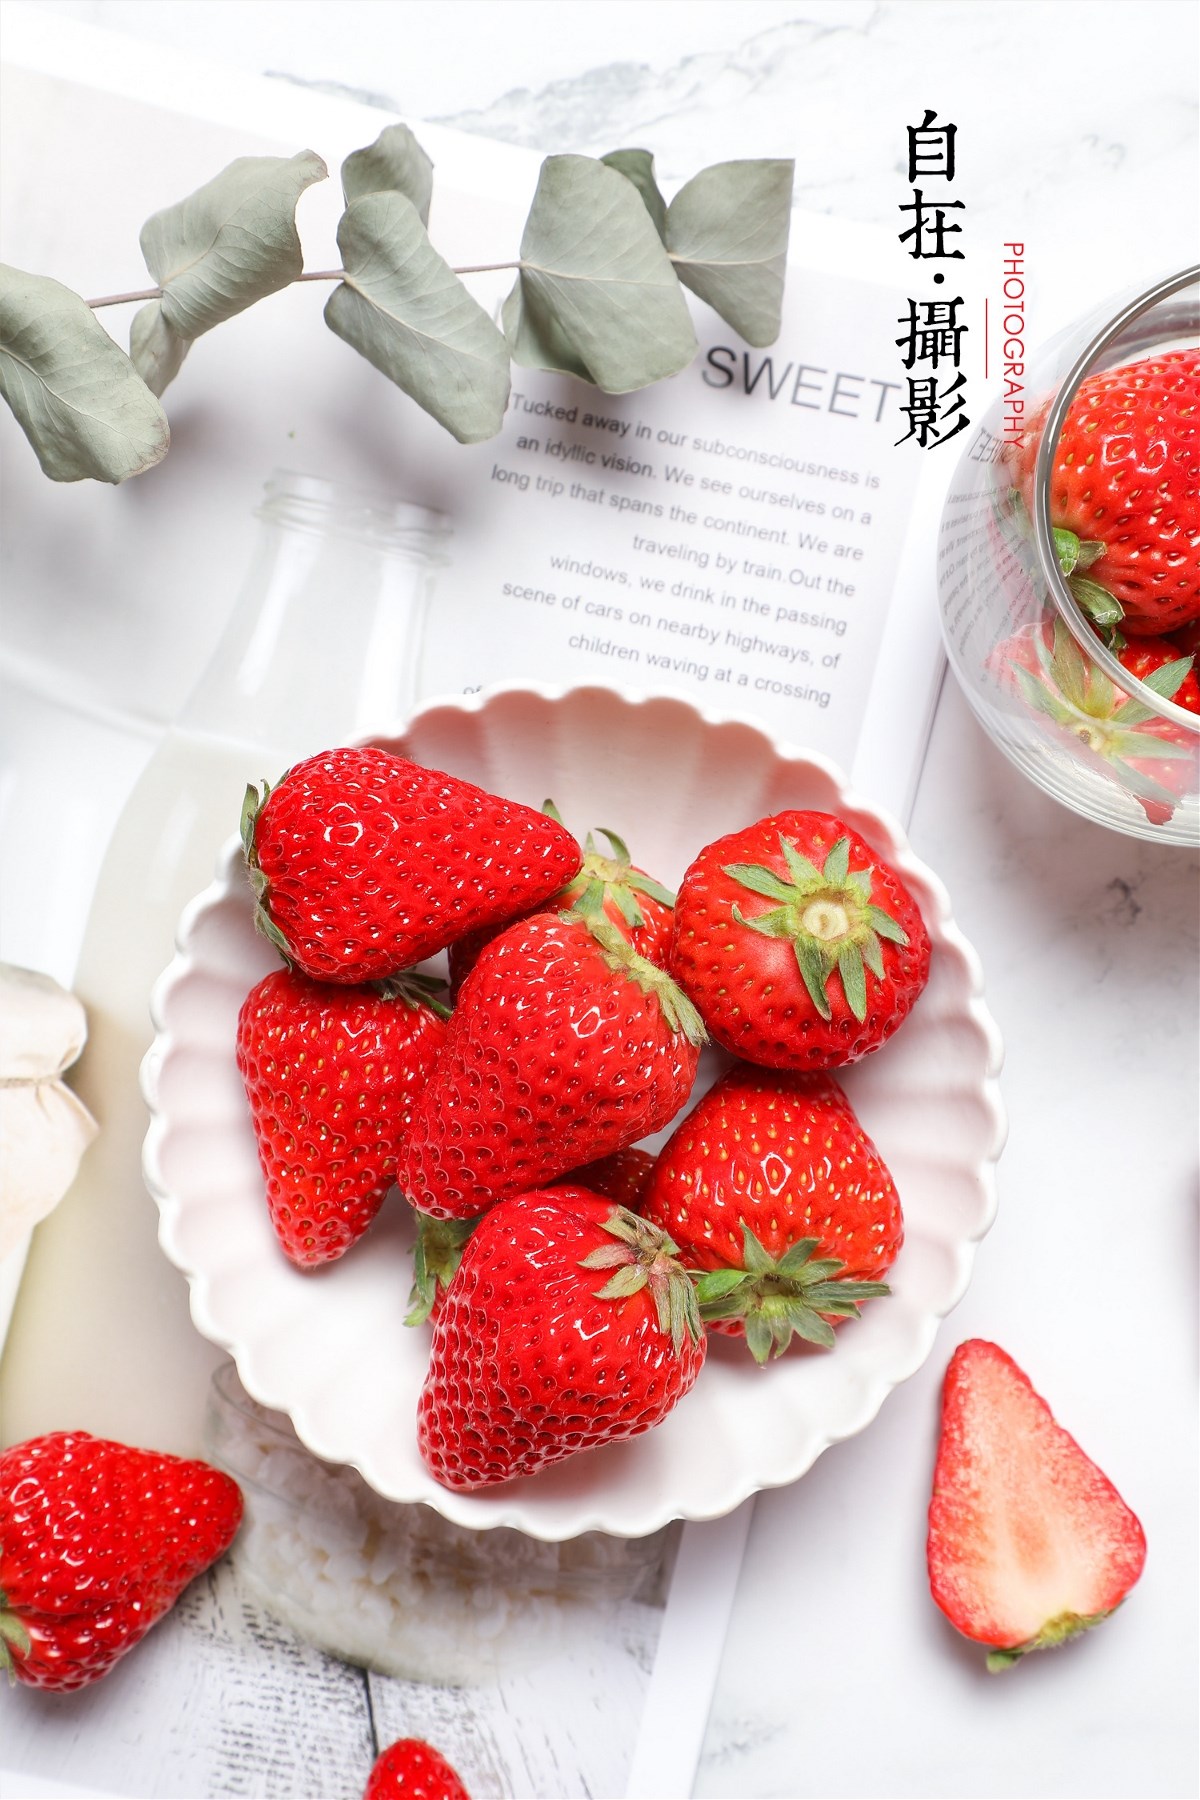 奶油草莓|水果|牛奶|产品摄影